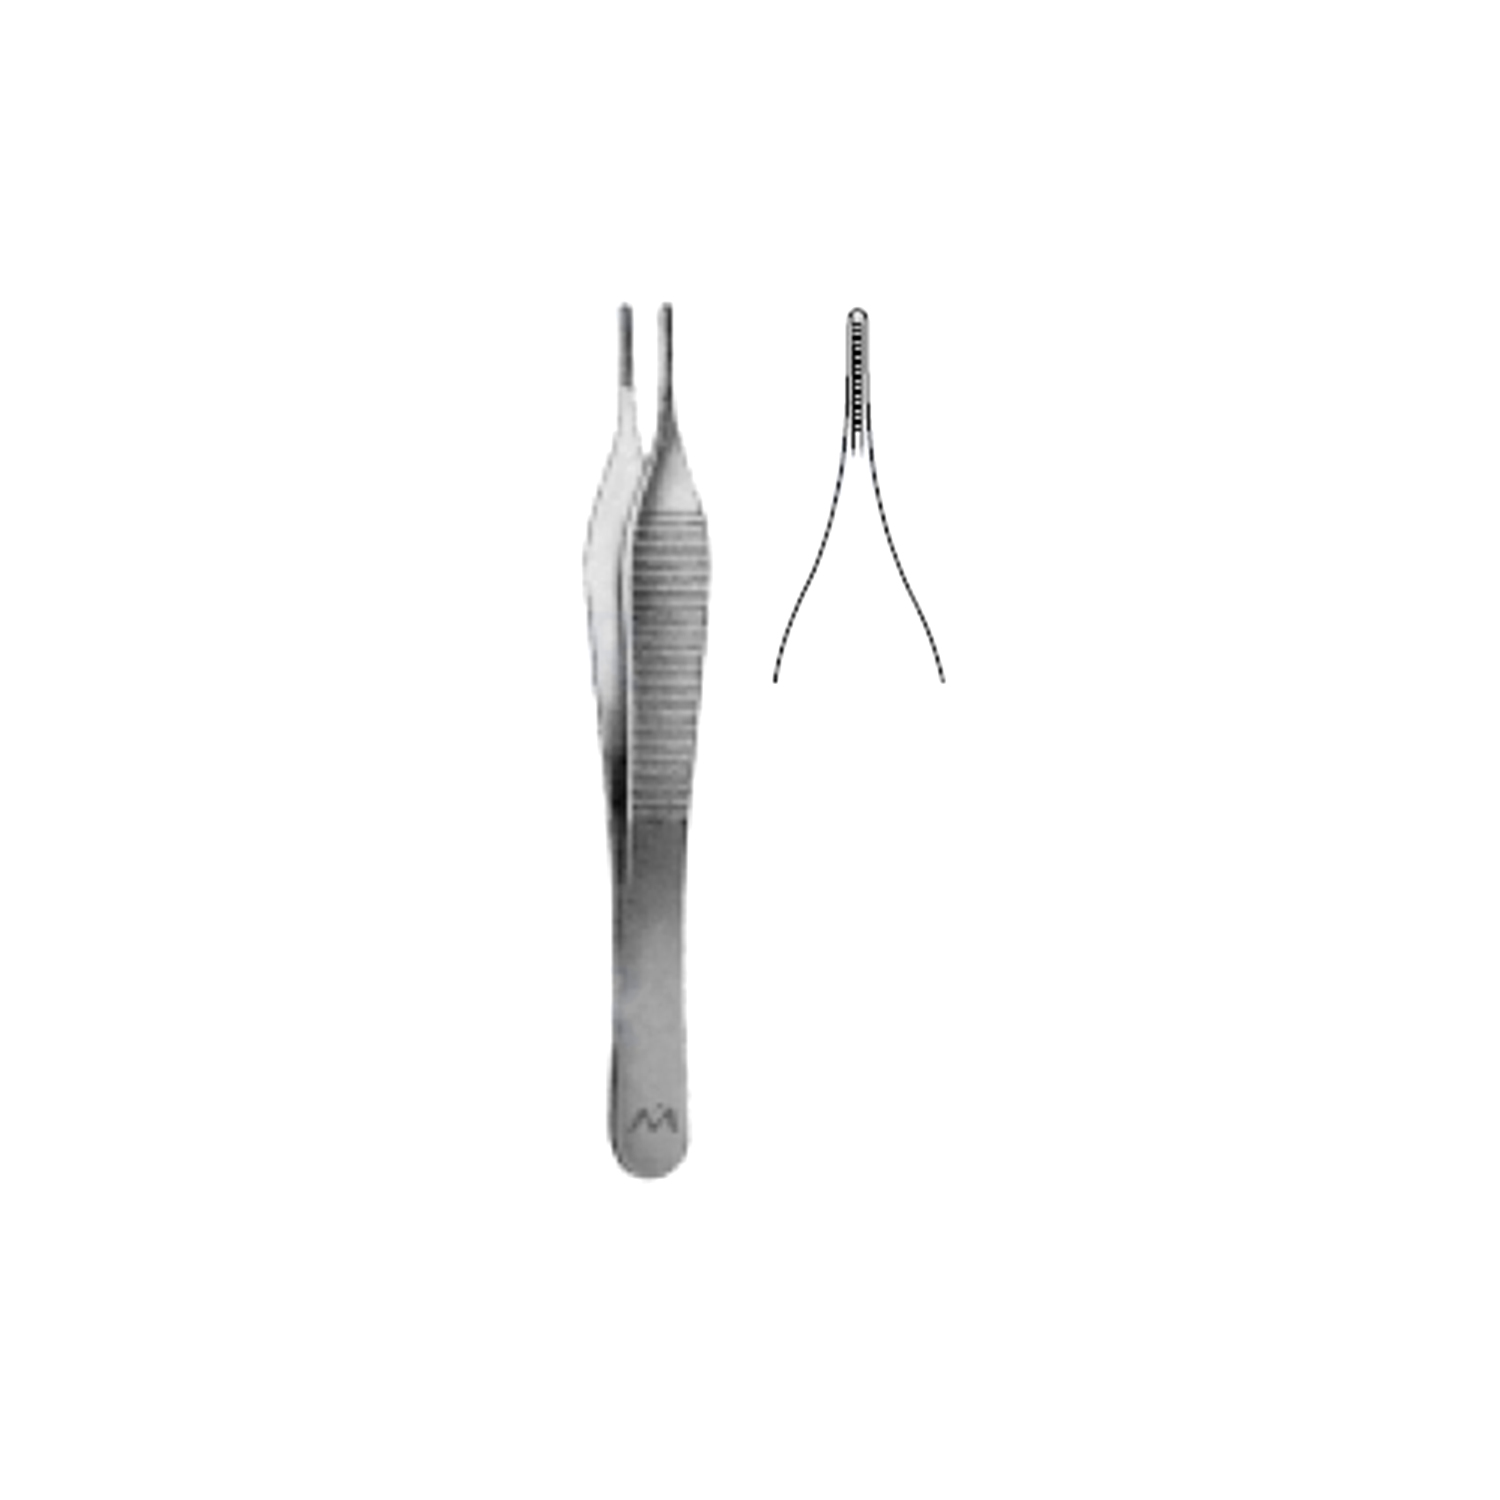 Marina Medical Adson-DeBakey Forceps - Straight, Atraumatic, 2.0mm Jaw 12cm/4.75in